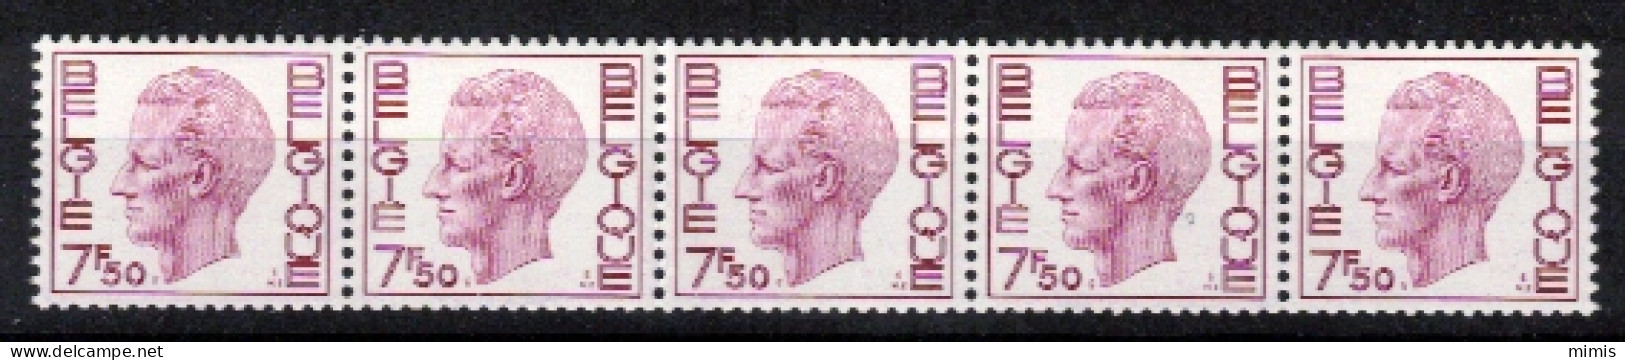 BELGIQUE   1982   R72  Bande De 5  N° 585 ** Sans Charnière - Coil Stamps